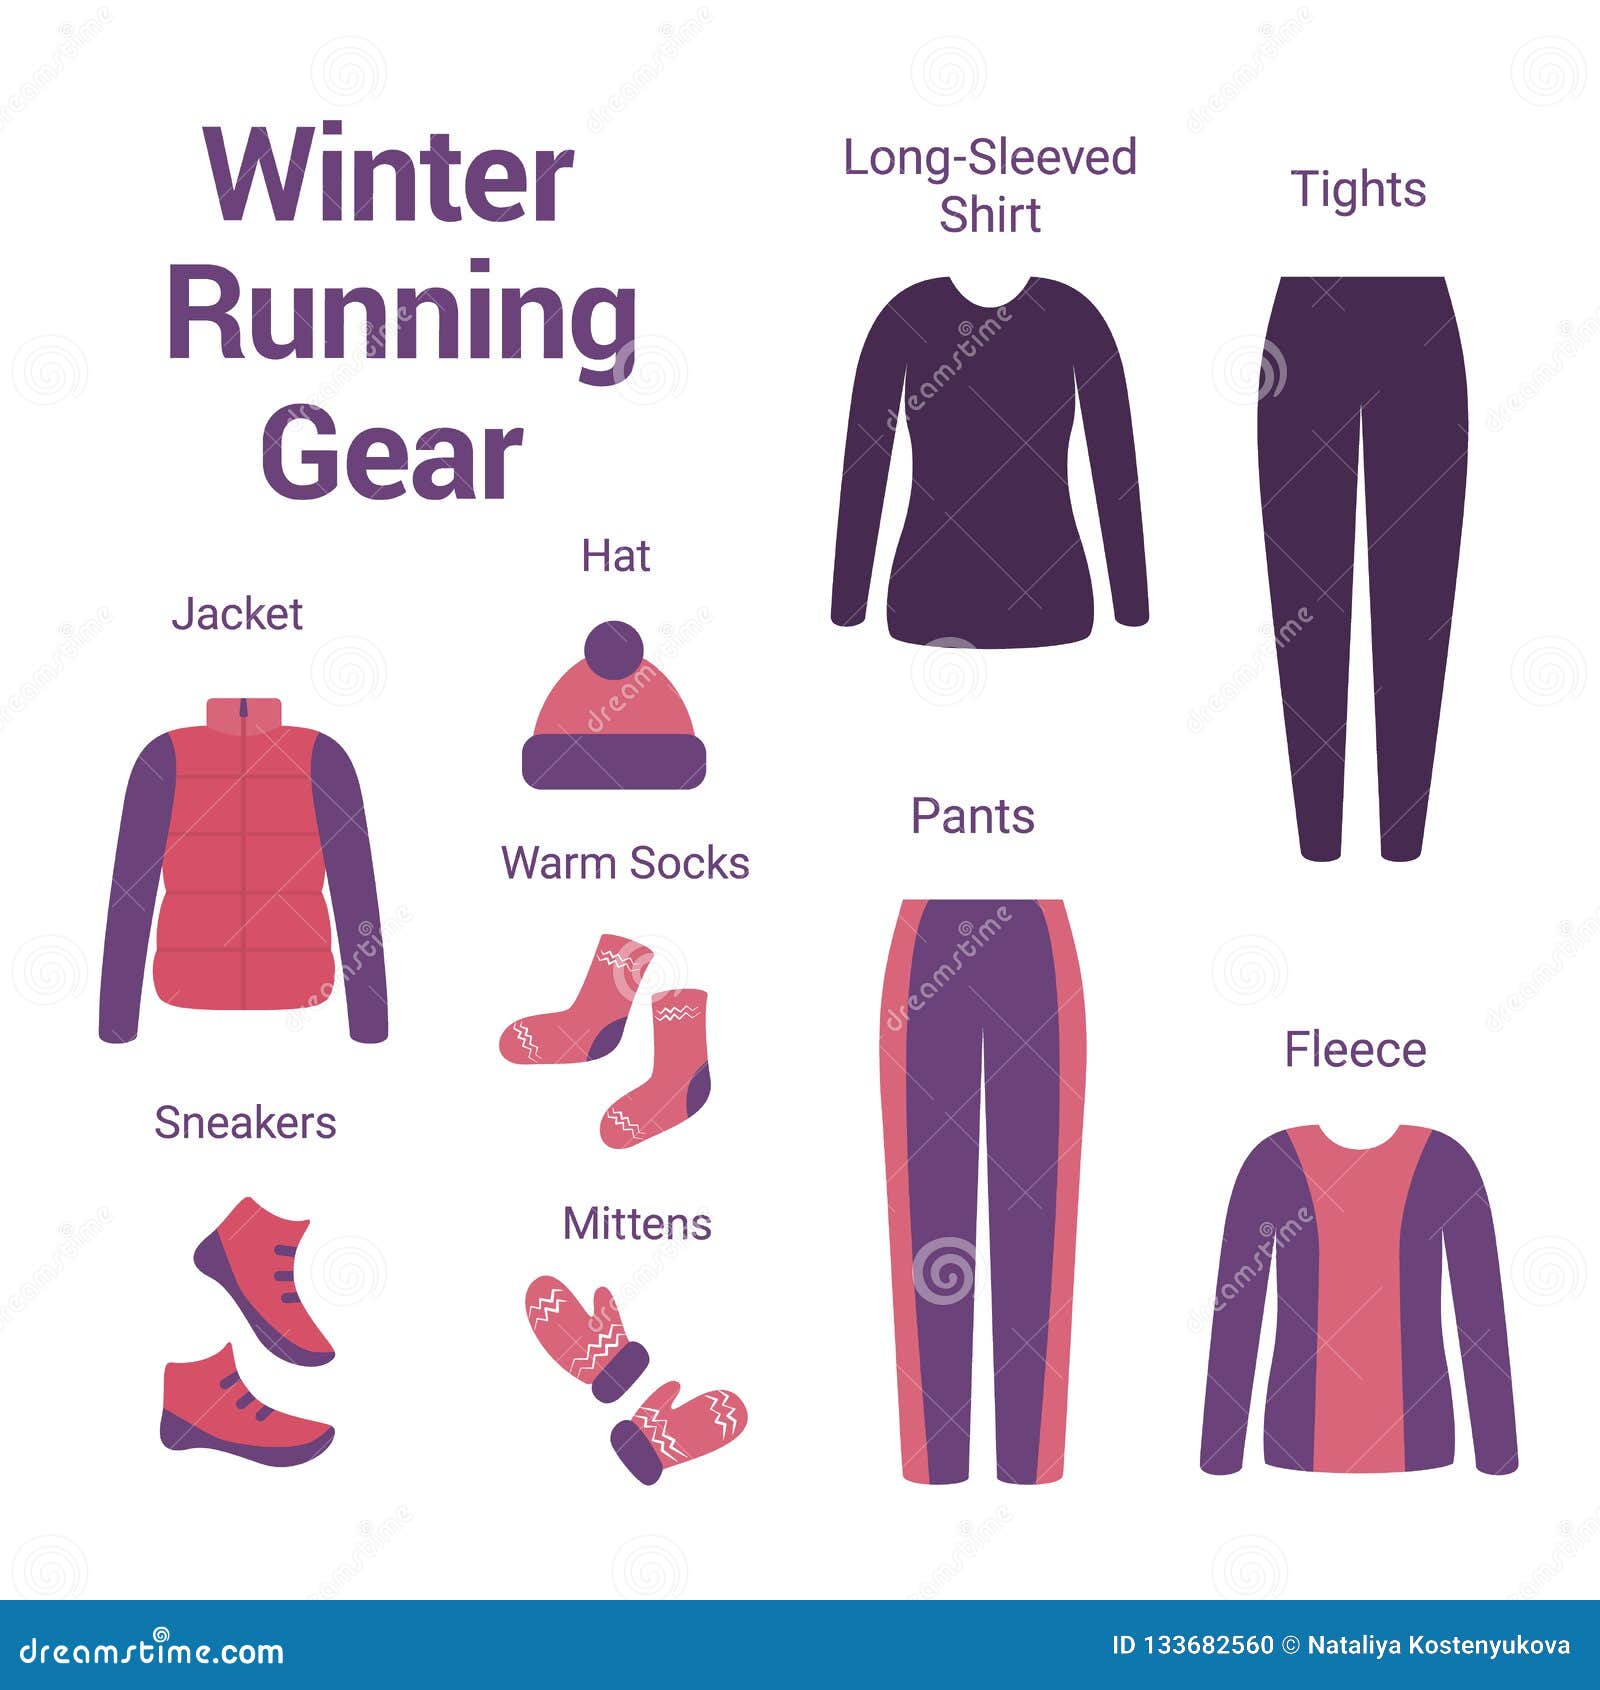 dressing for winter running